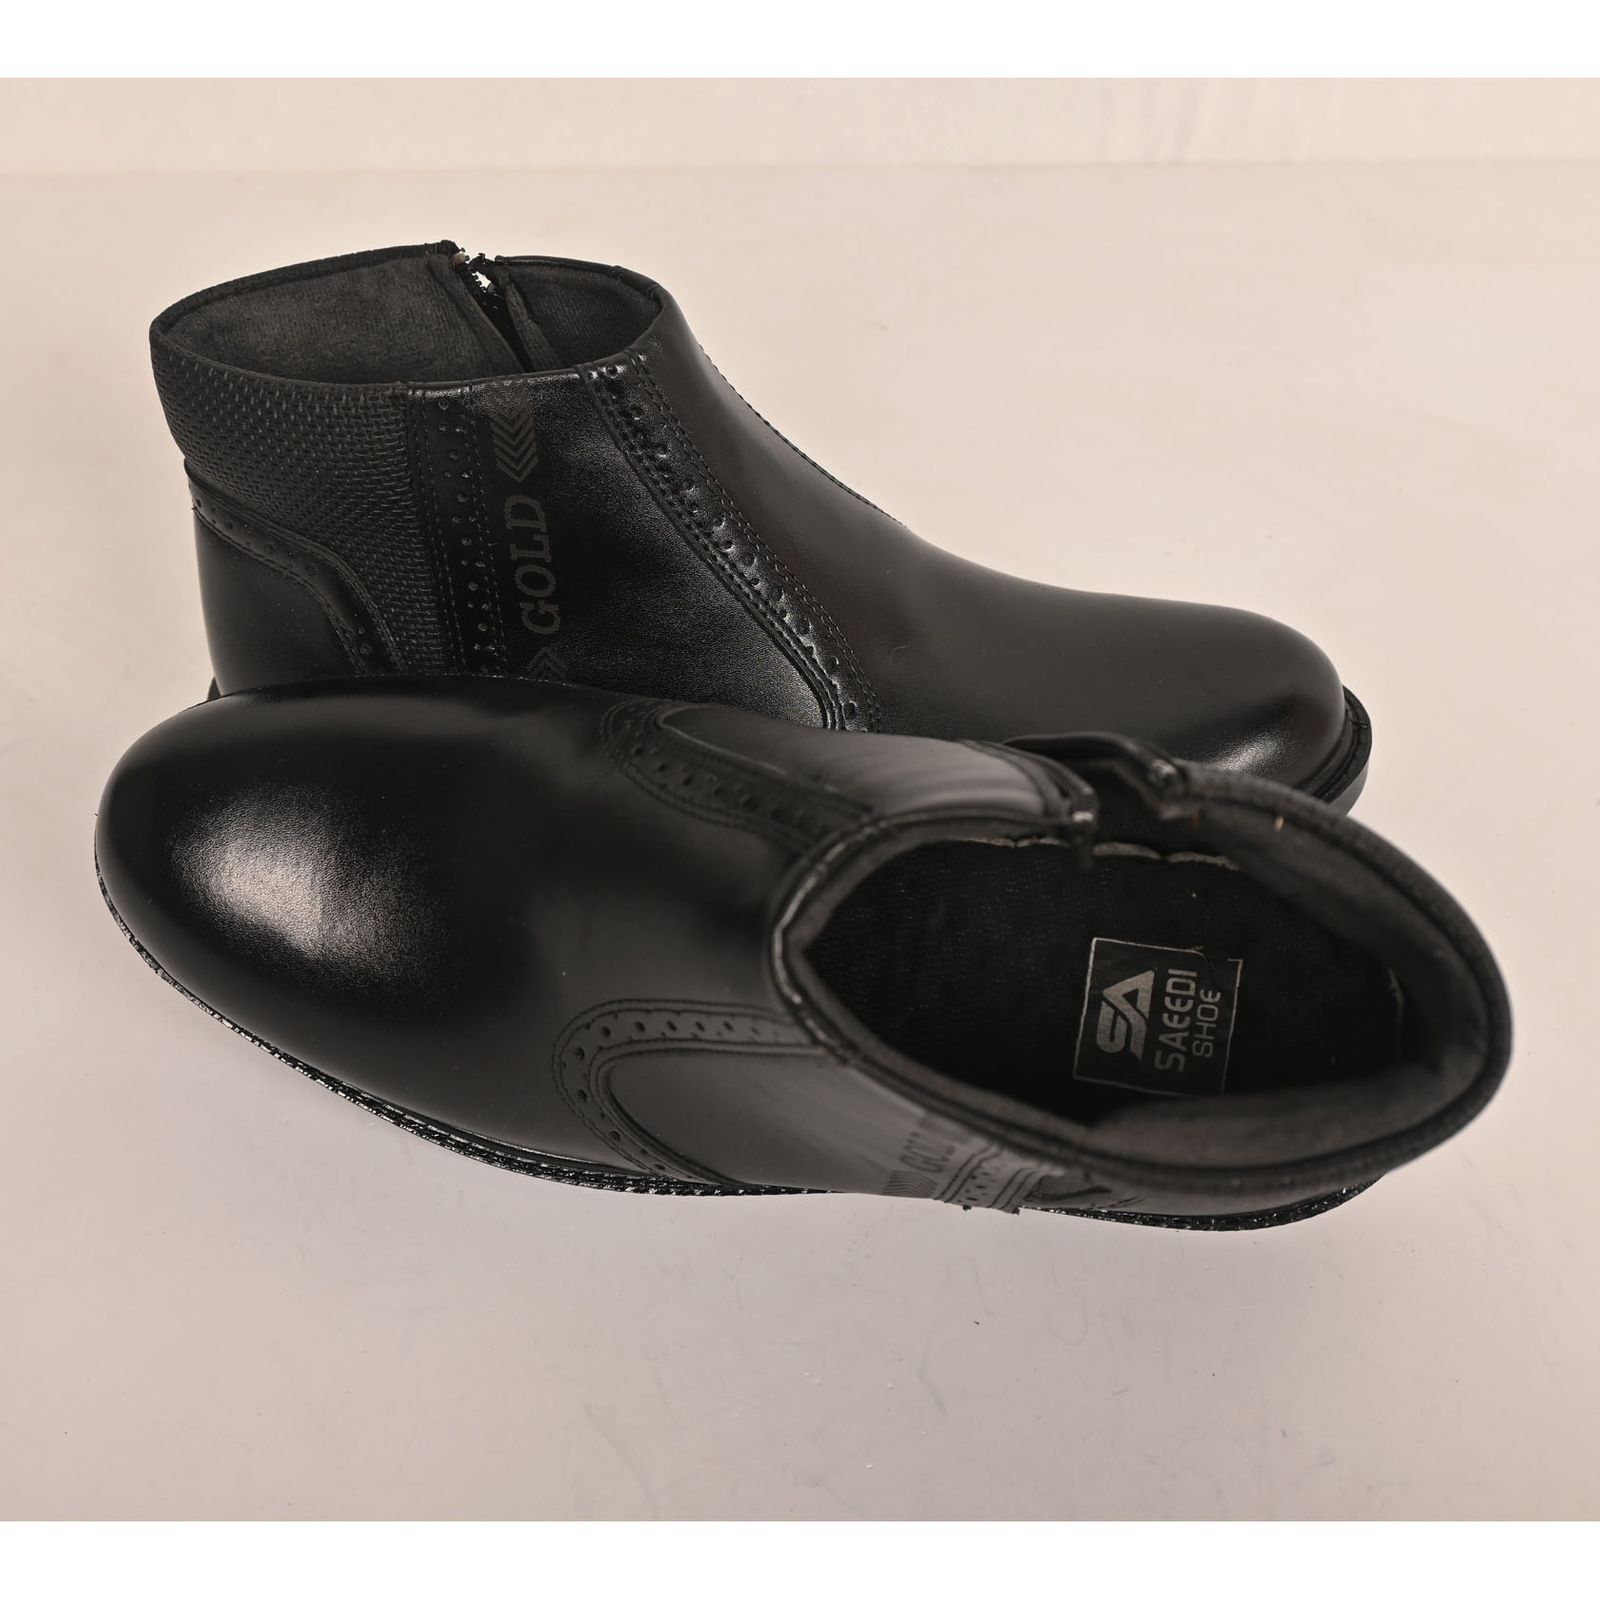 نیم بوت مردانه کفش سعیدی مدل 529m -  - 8